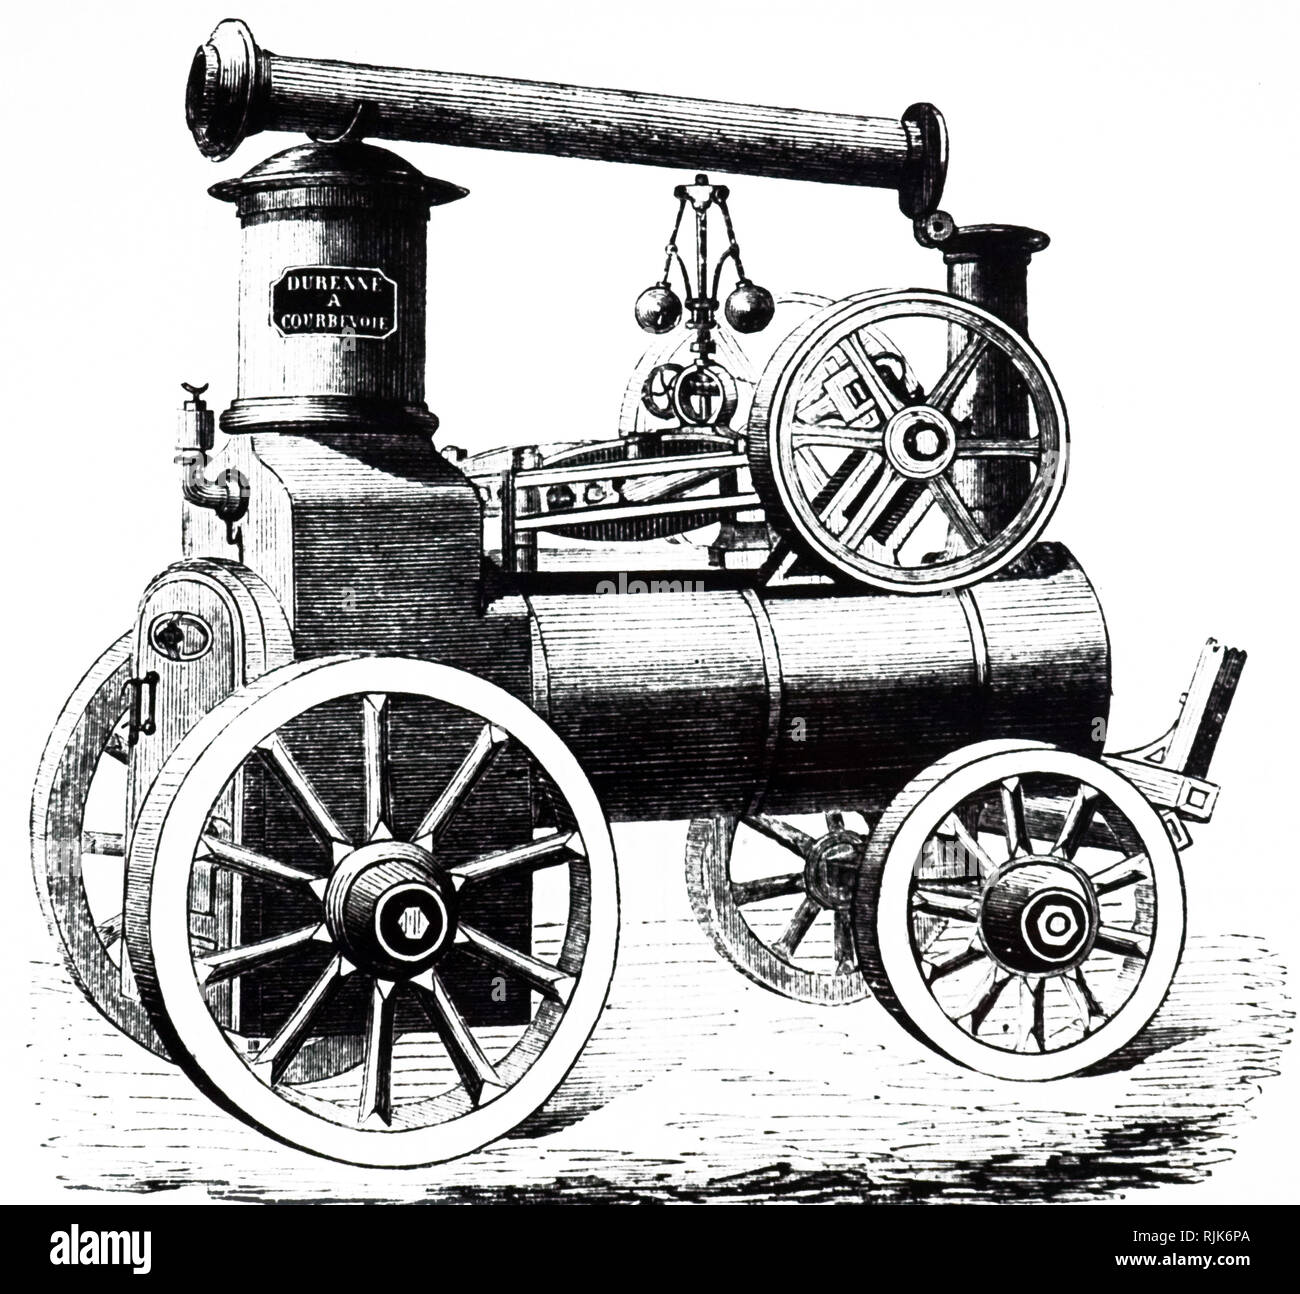 Una incisione raffigurante Jean-Francois Durenne la locomotiva a vapore -1855. Jean-Francois Durenne era un francese costruttrice di motori a vapore, caldaie, e fire-combattente attrezzature a Courbevoie. Datata del XIX secolo Foto Stock